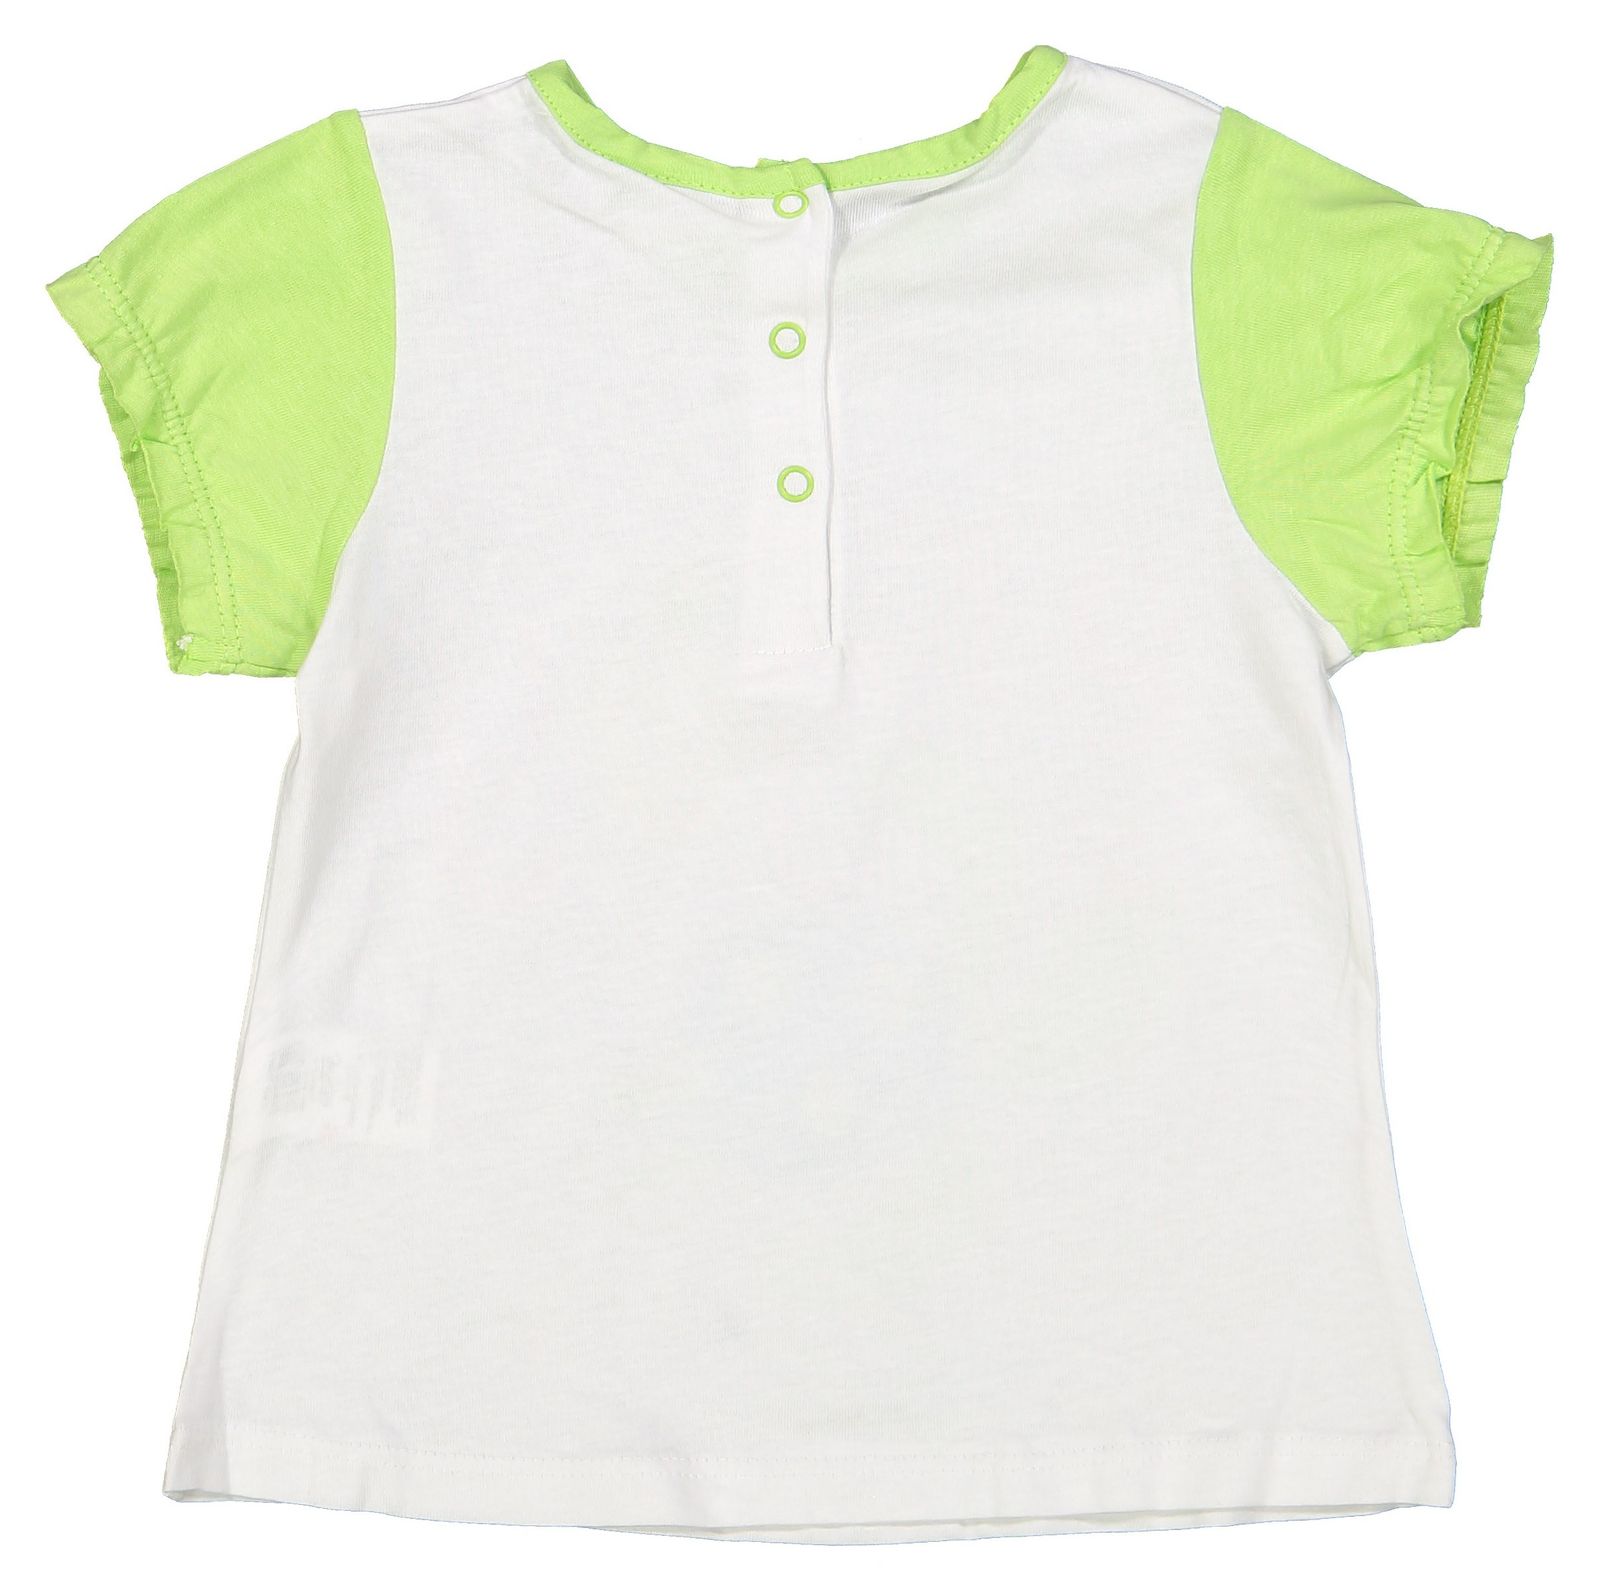 تی شرت و شلوارک نخی نوزادی دخترانه بسته 2 عددی - بلوکیدز - سبز روشن و سفيد - 6